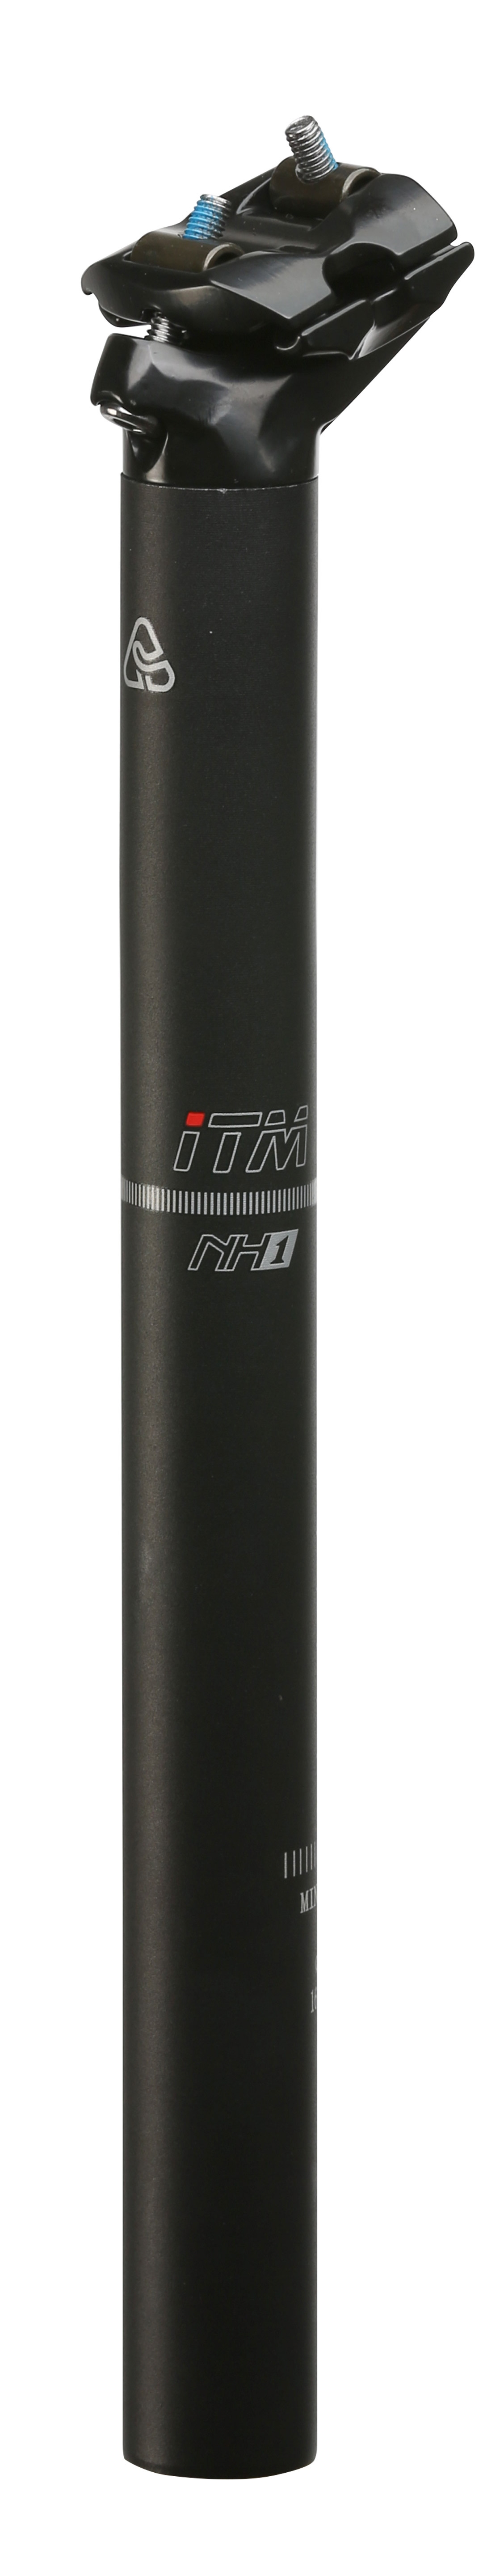 sedlovka ITM NH1 31,6/400 mm, hliníková, černá Typ: pevná, průměr: 31,6, materiál: hliník